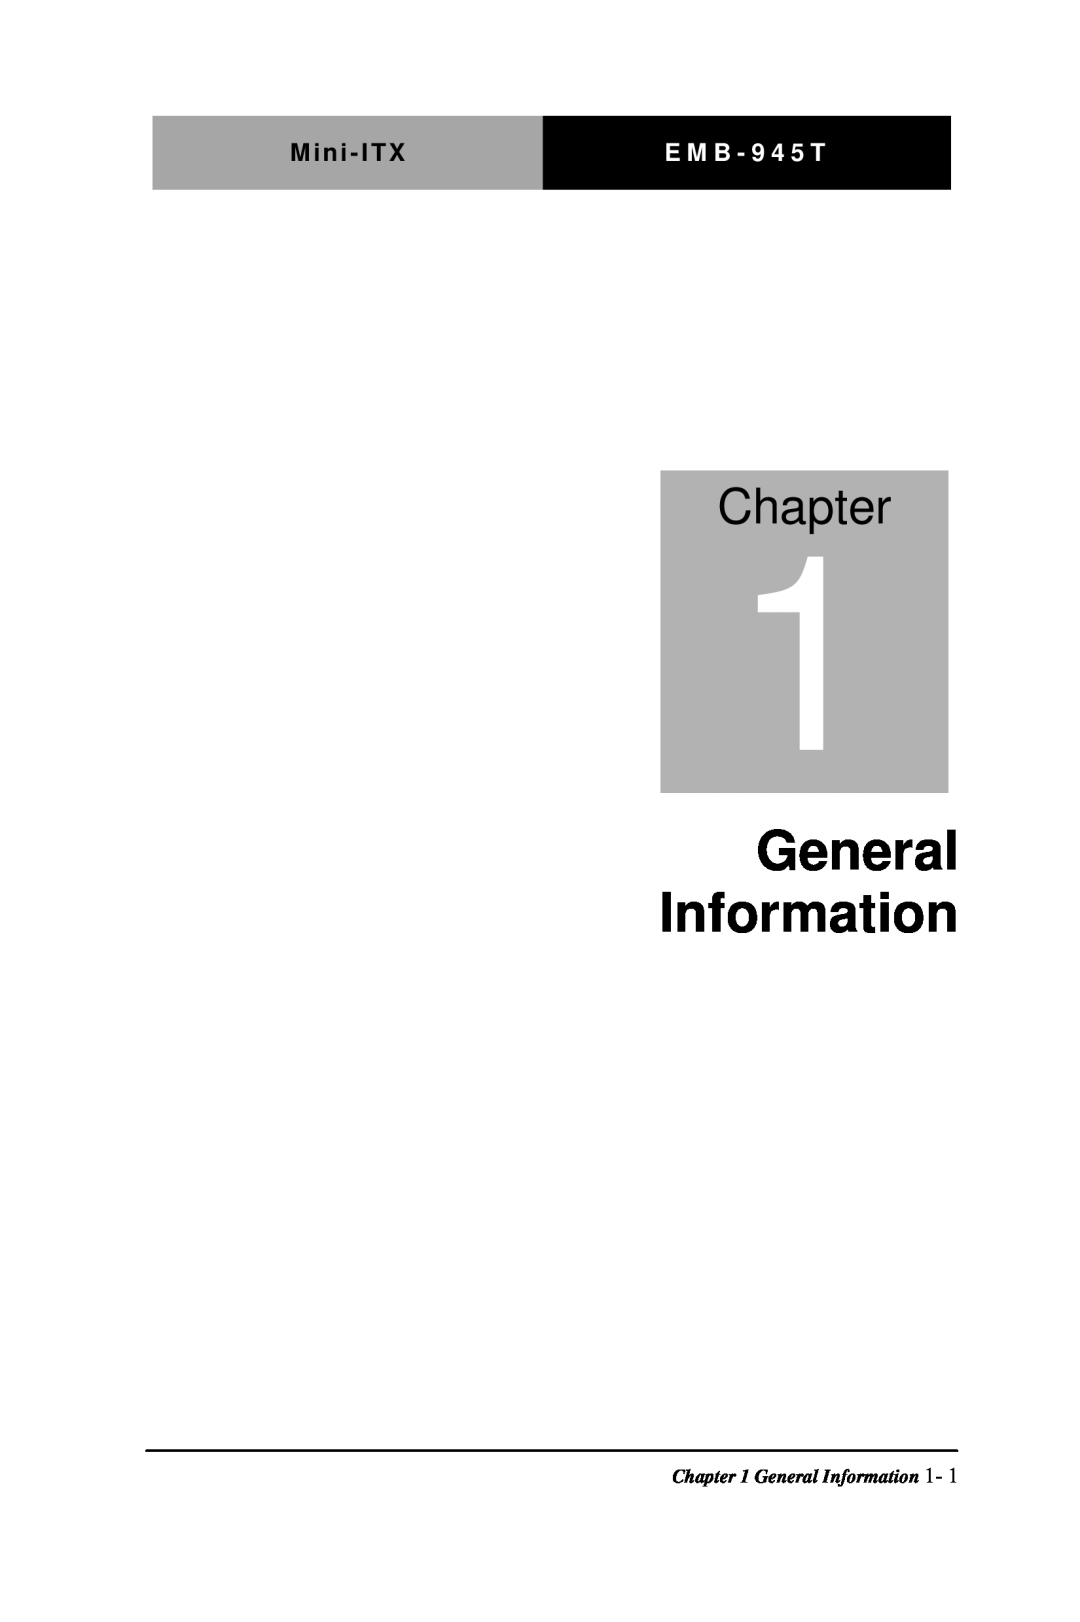 Intel EMB-945T manual General Information, Chapter, Mini - ITX, E M B - 9 4 5 T 